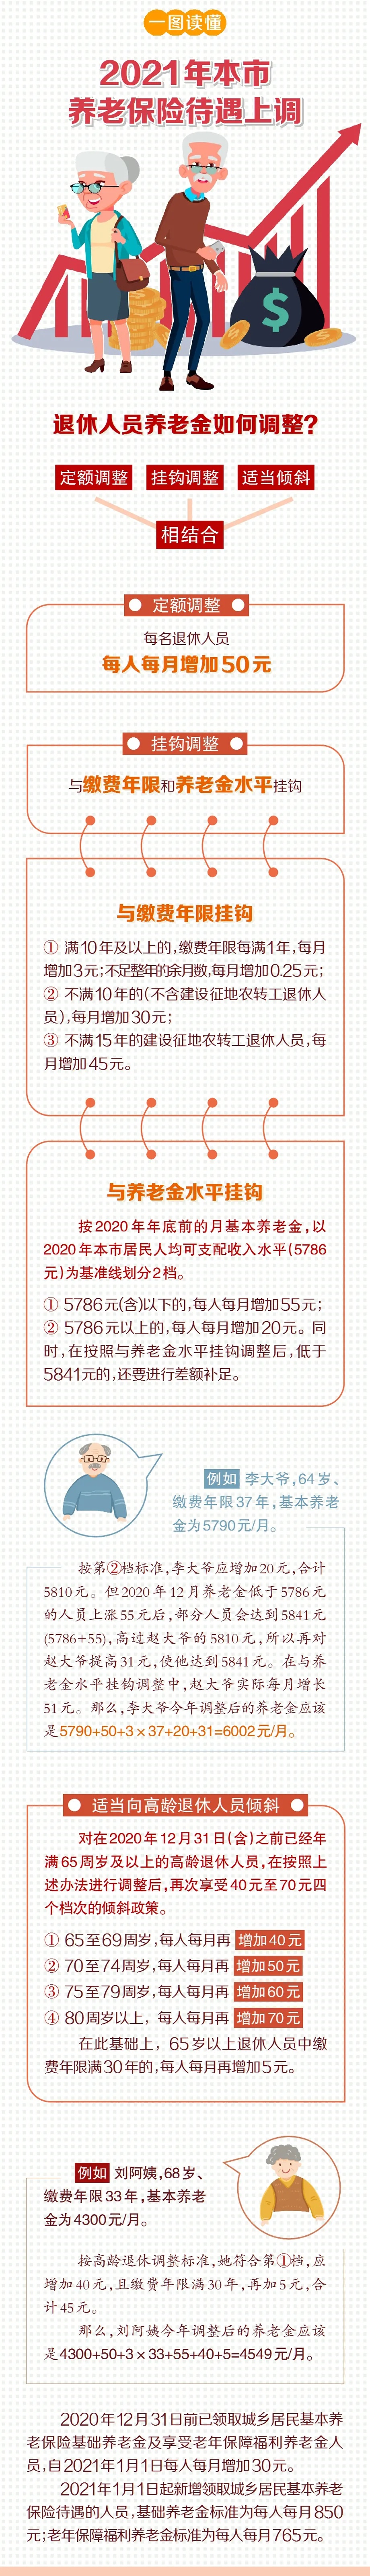 北京最低工资标准企退养老金等上调最新消息！请看下面的详解